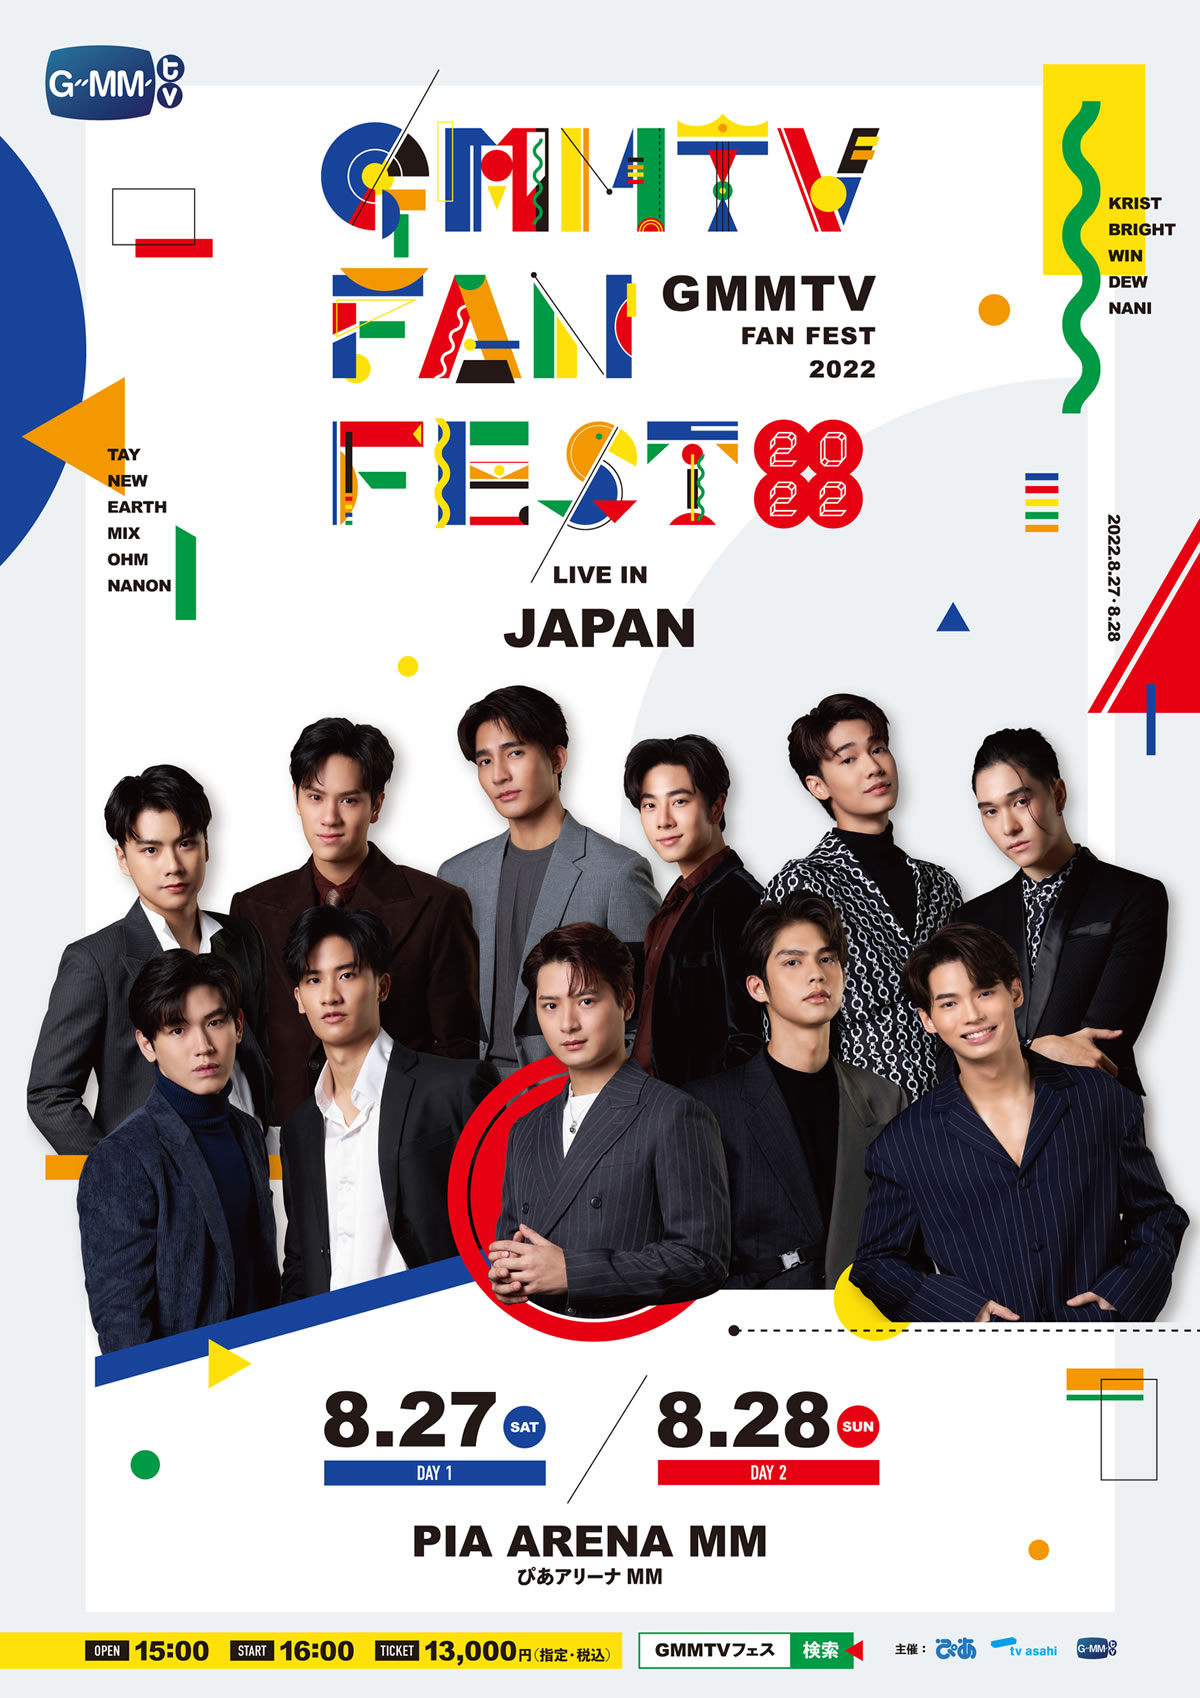 GMMTVの俳優11人が日本に集結！「GMMTV FAN FEST 2022 LIVE IN JAPAN 